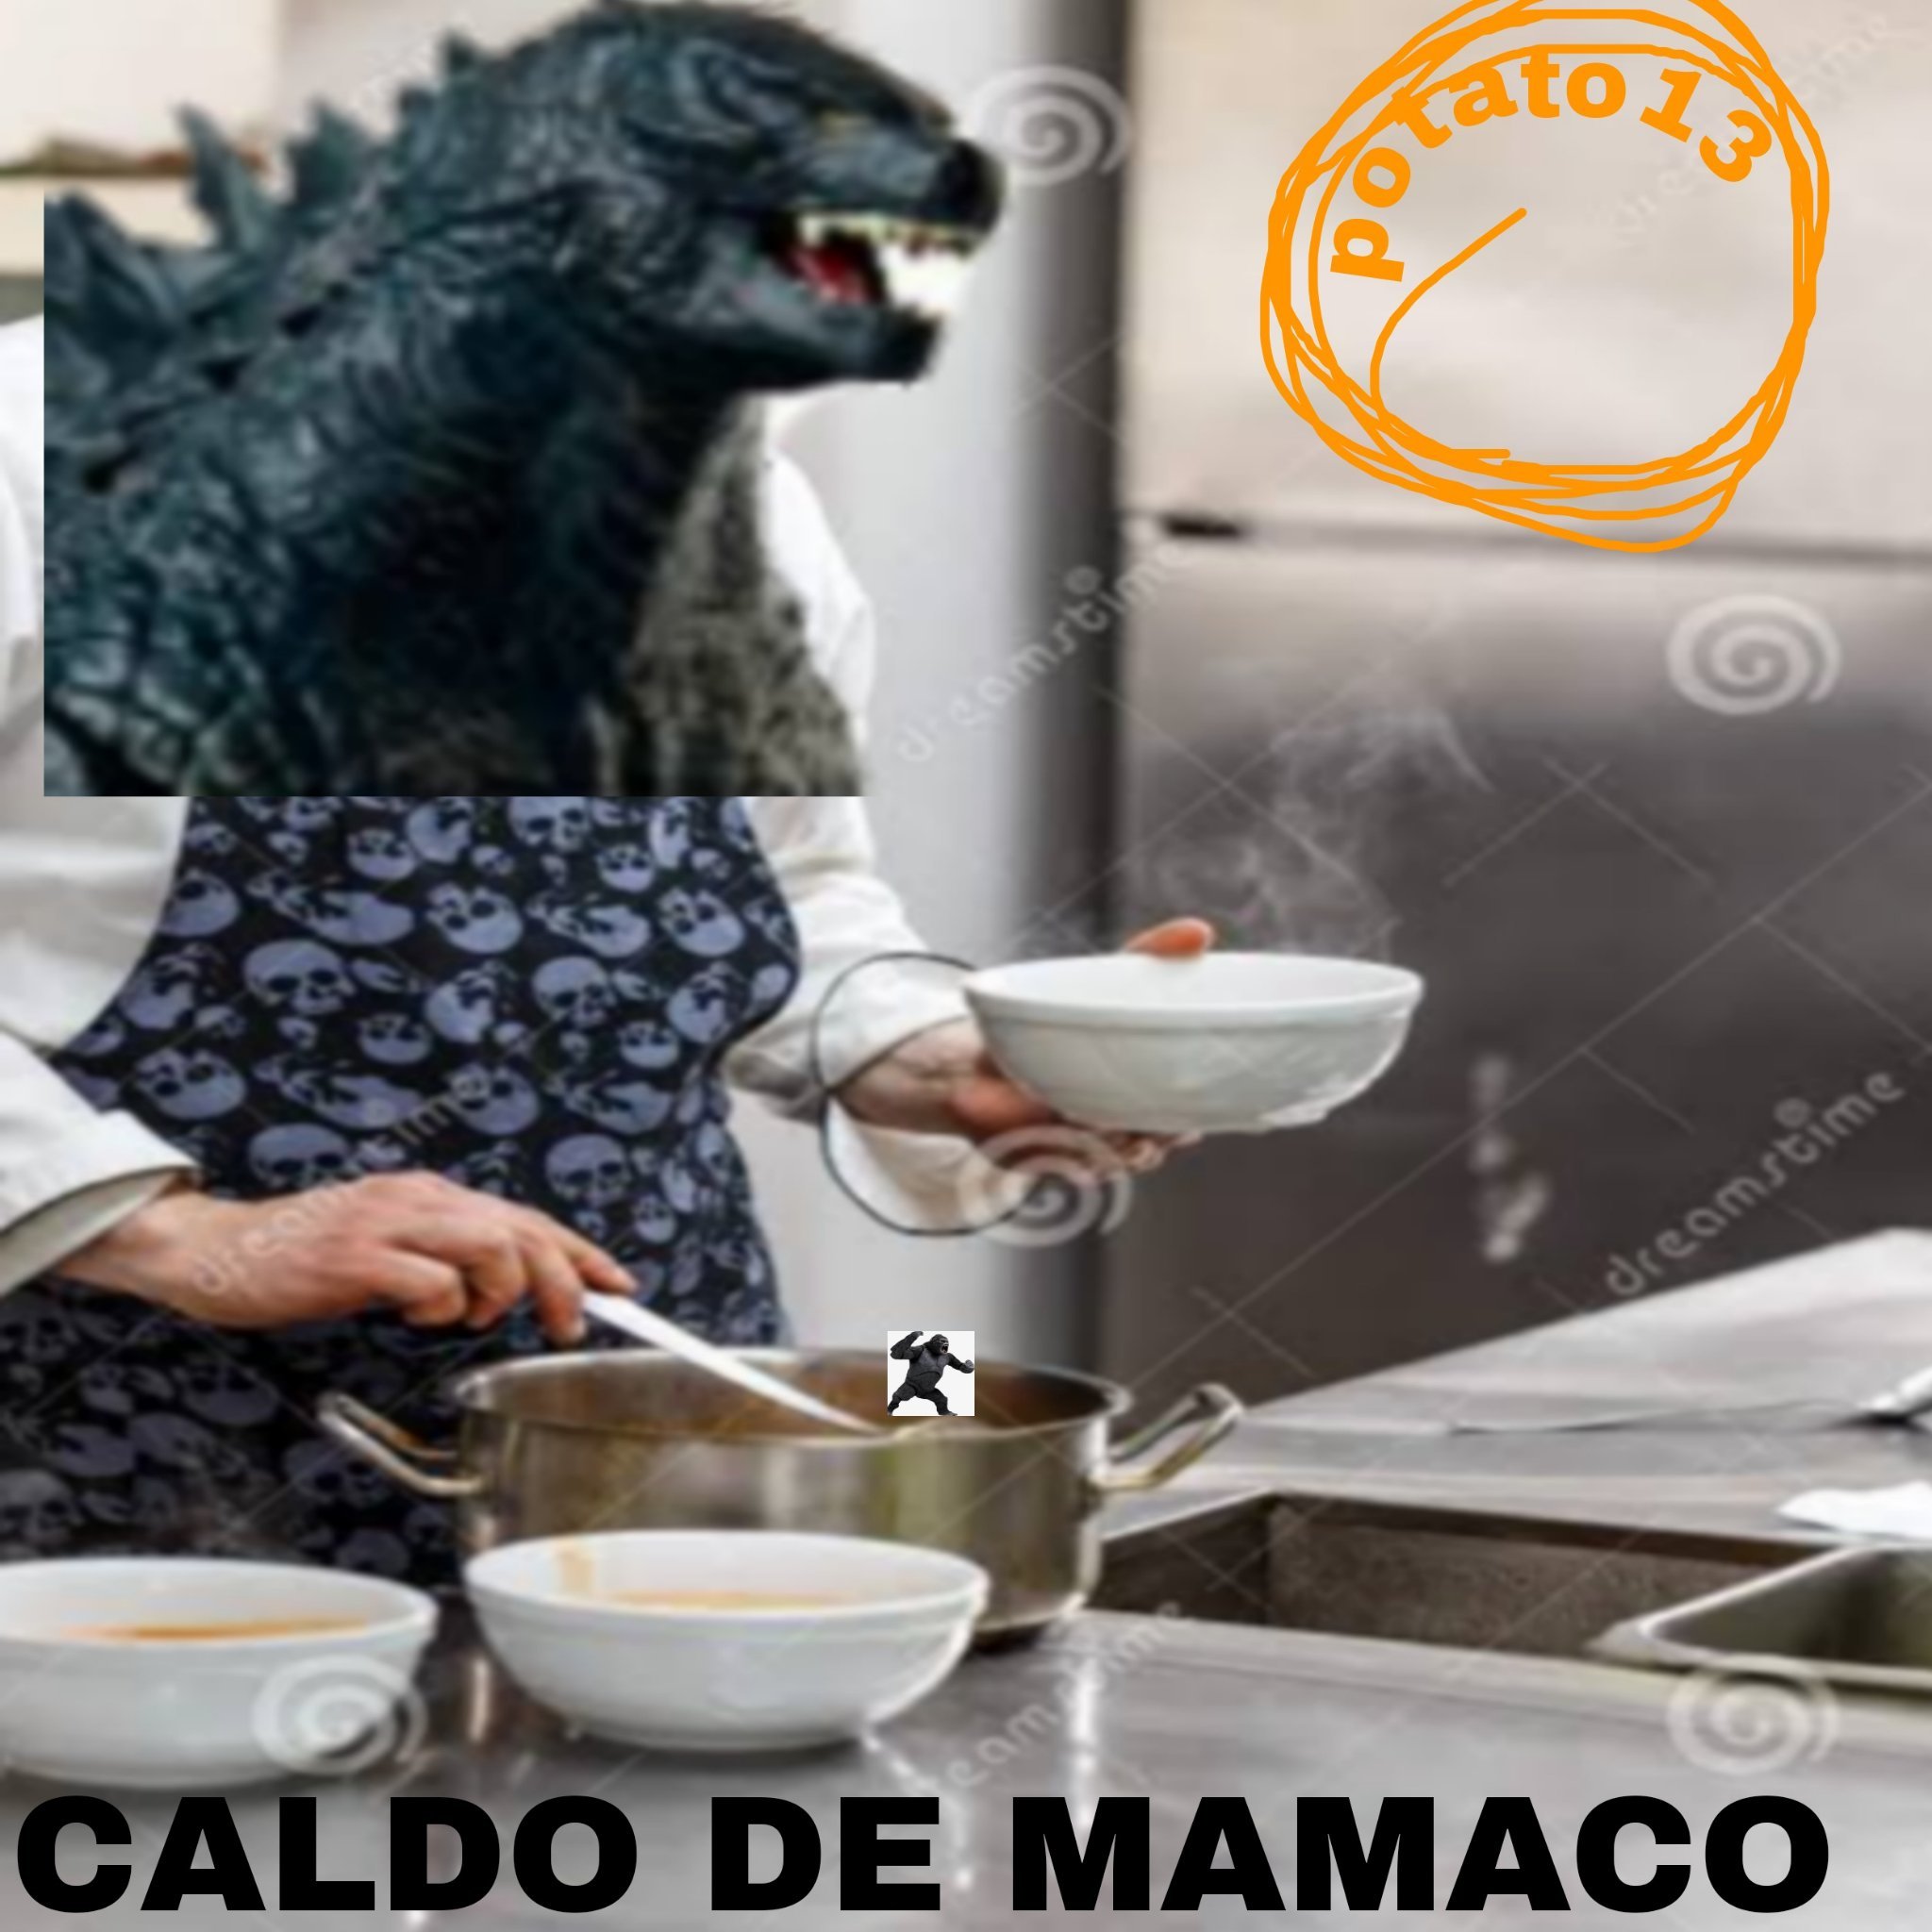 mamaco - meme